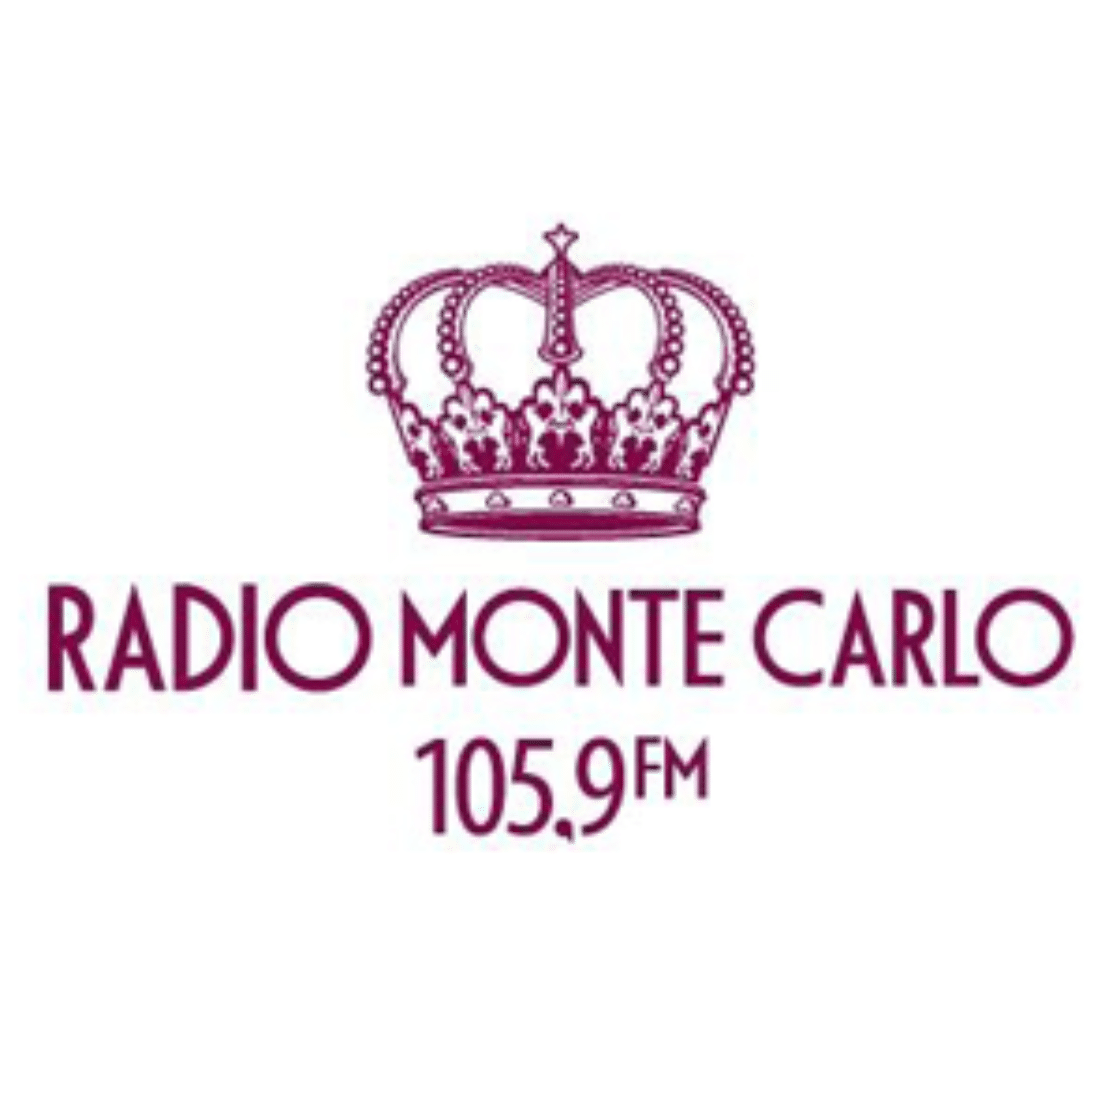 Радио монте карло частота в москве fm. Радио Monte Carlo логотип. Значки радио Монте Карло. Monte Carlo 105.9. Радио Монте-Карло Санкт-Петербург.